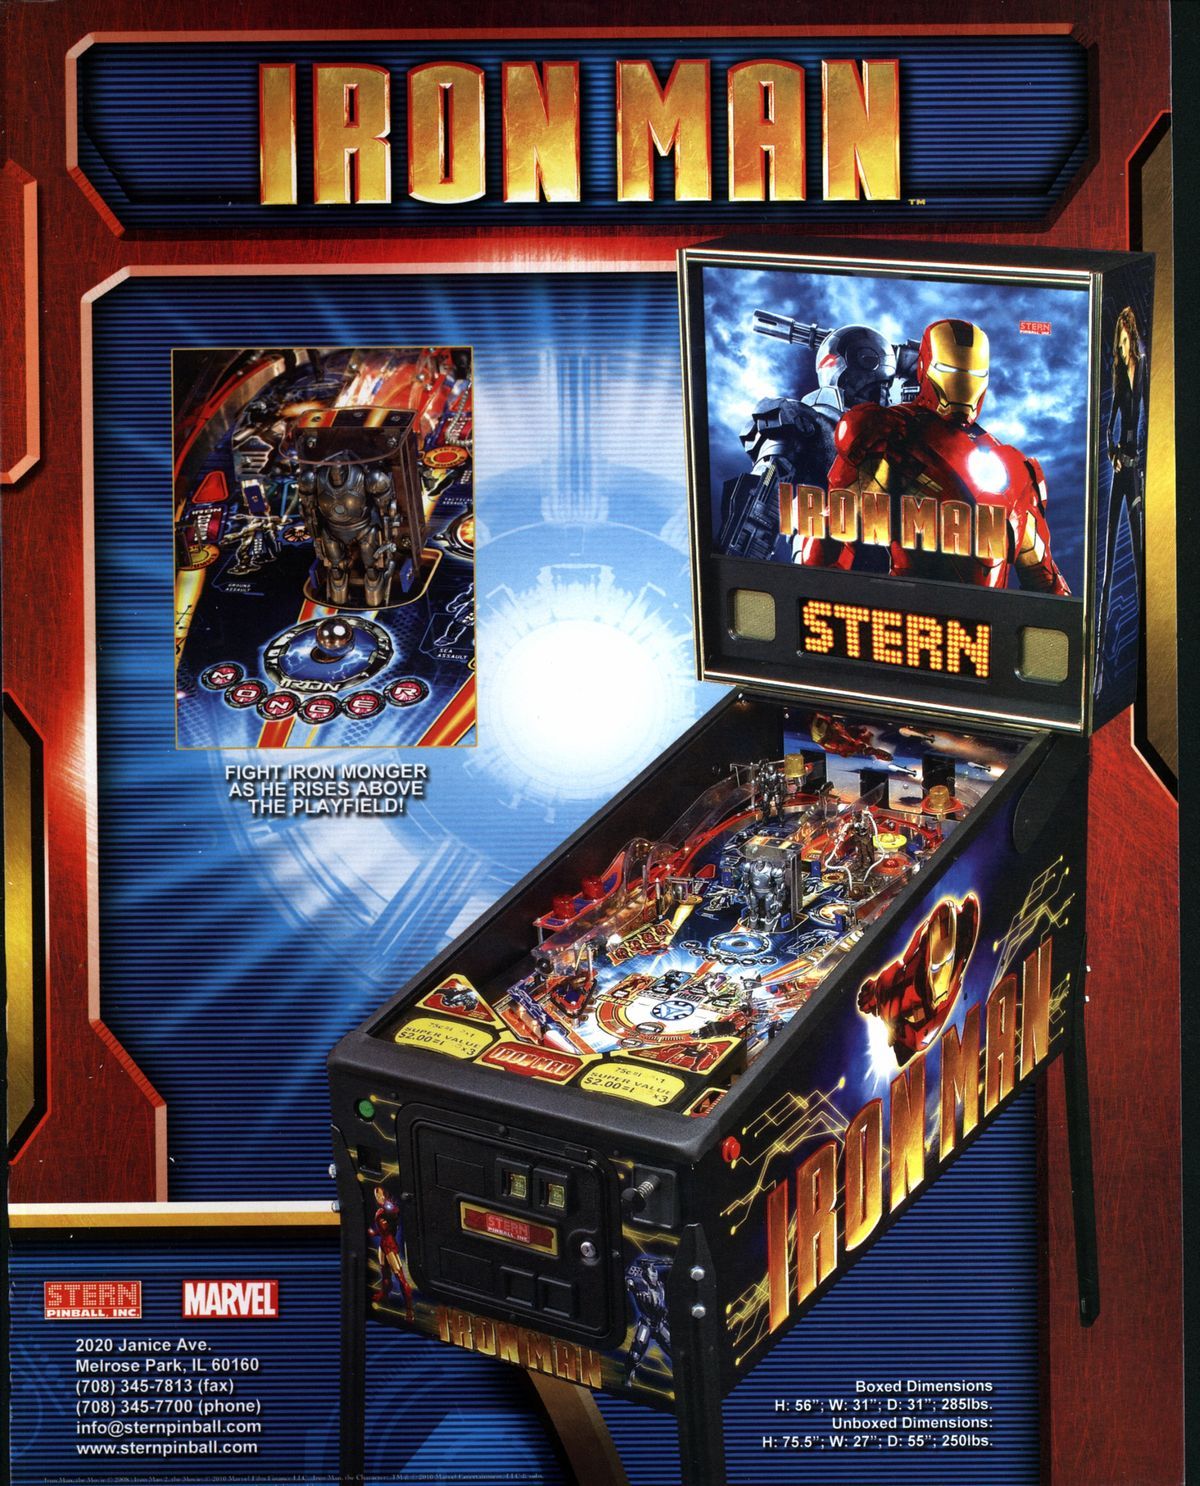 Iron Man #PinballMachine #Flipper #Pinball #Marvel #Movie #Comic. Pinball, Pinball machine, Pinball art